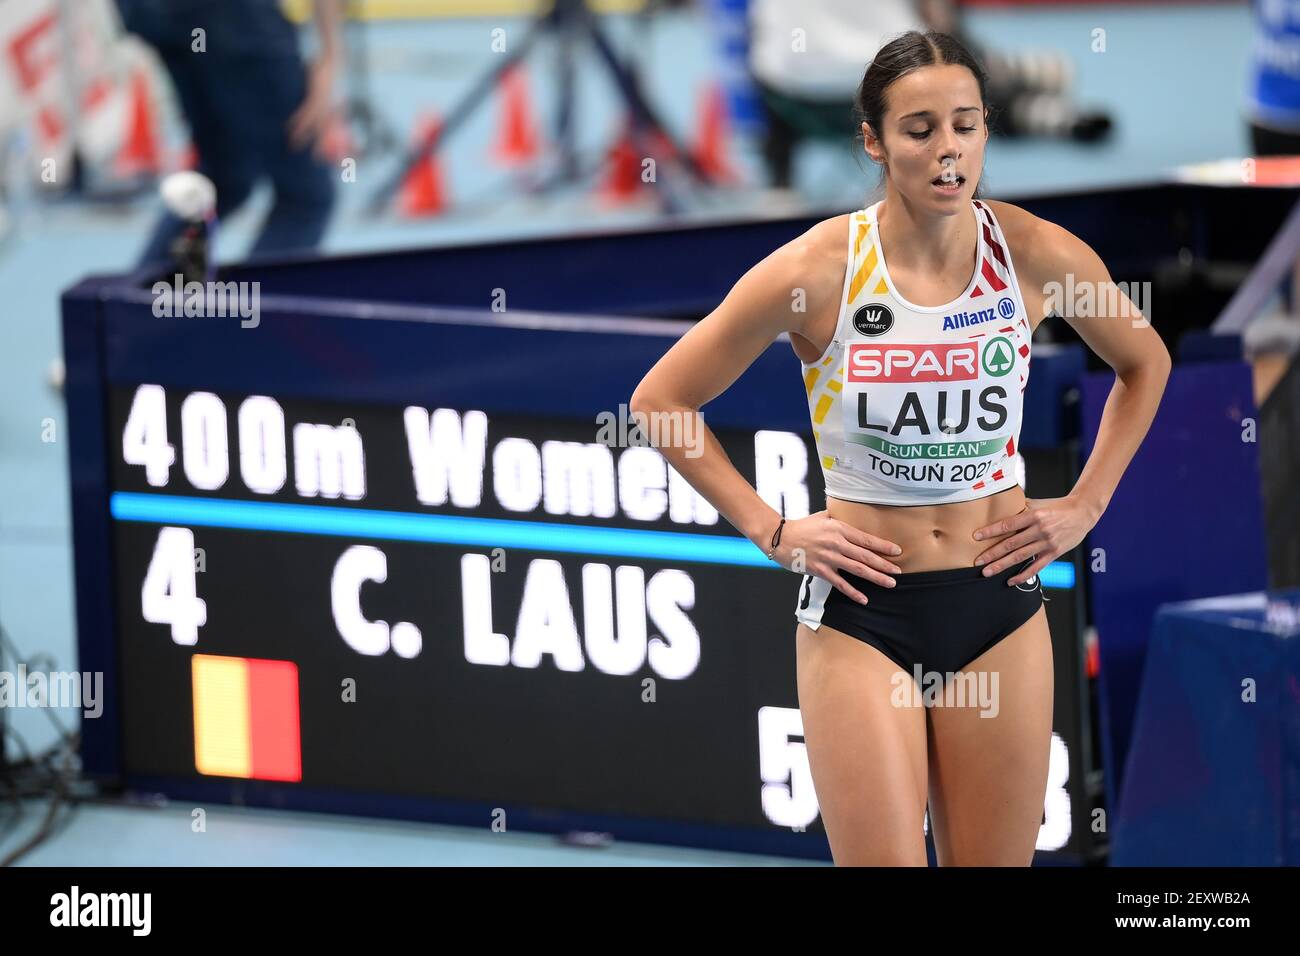 Camille Laus belge photographiée après la chaleur de la première manche de la course féminine de 400m des Championnats d'intérieur d'athlétisme européens, à Torun, Polan Banque D'Images